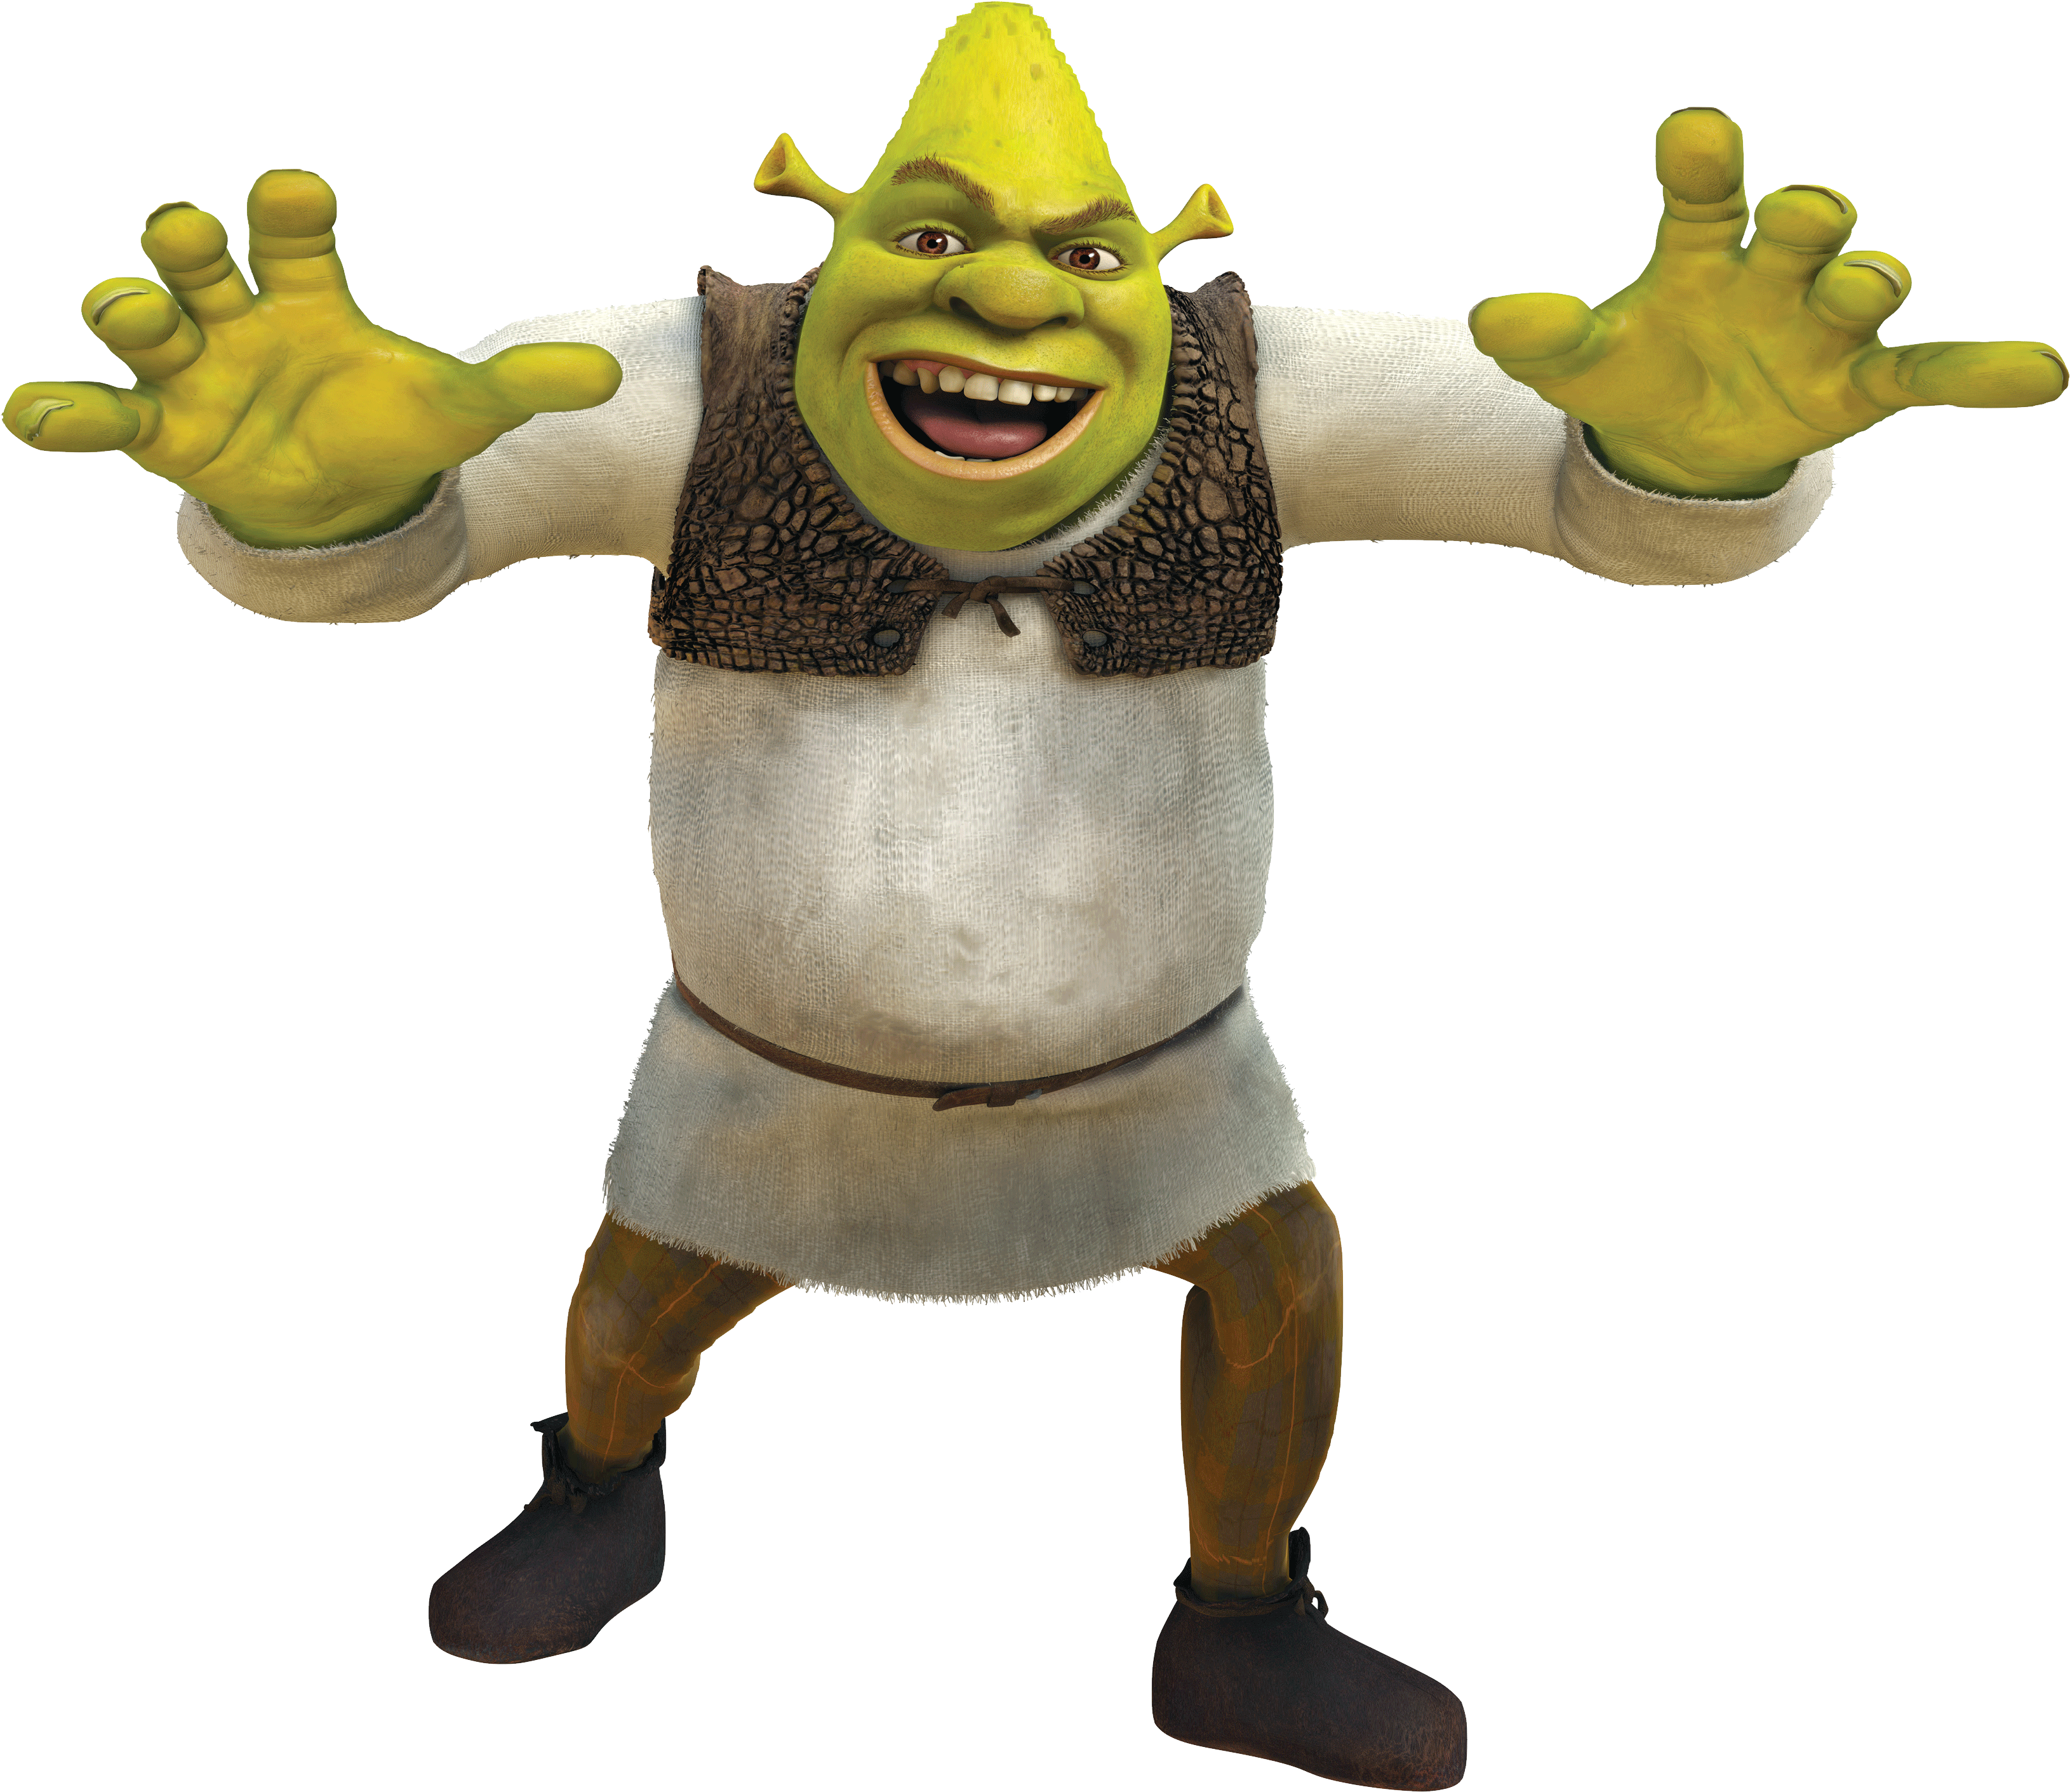 Shrek Logo Png Fanart Tv , Png Download - Shrek Title Transparent  Background, Png Download - 985x518 (#1973689) - PinPng